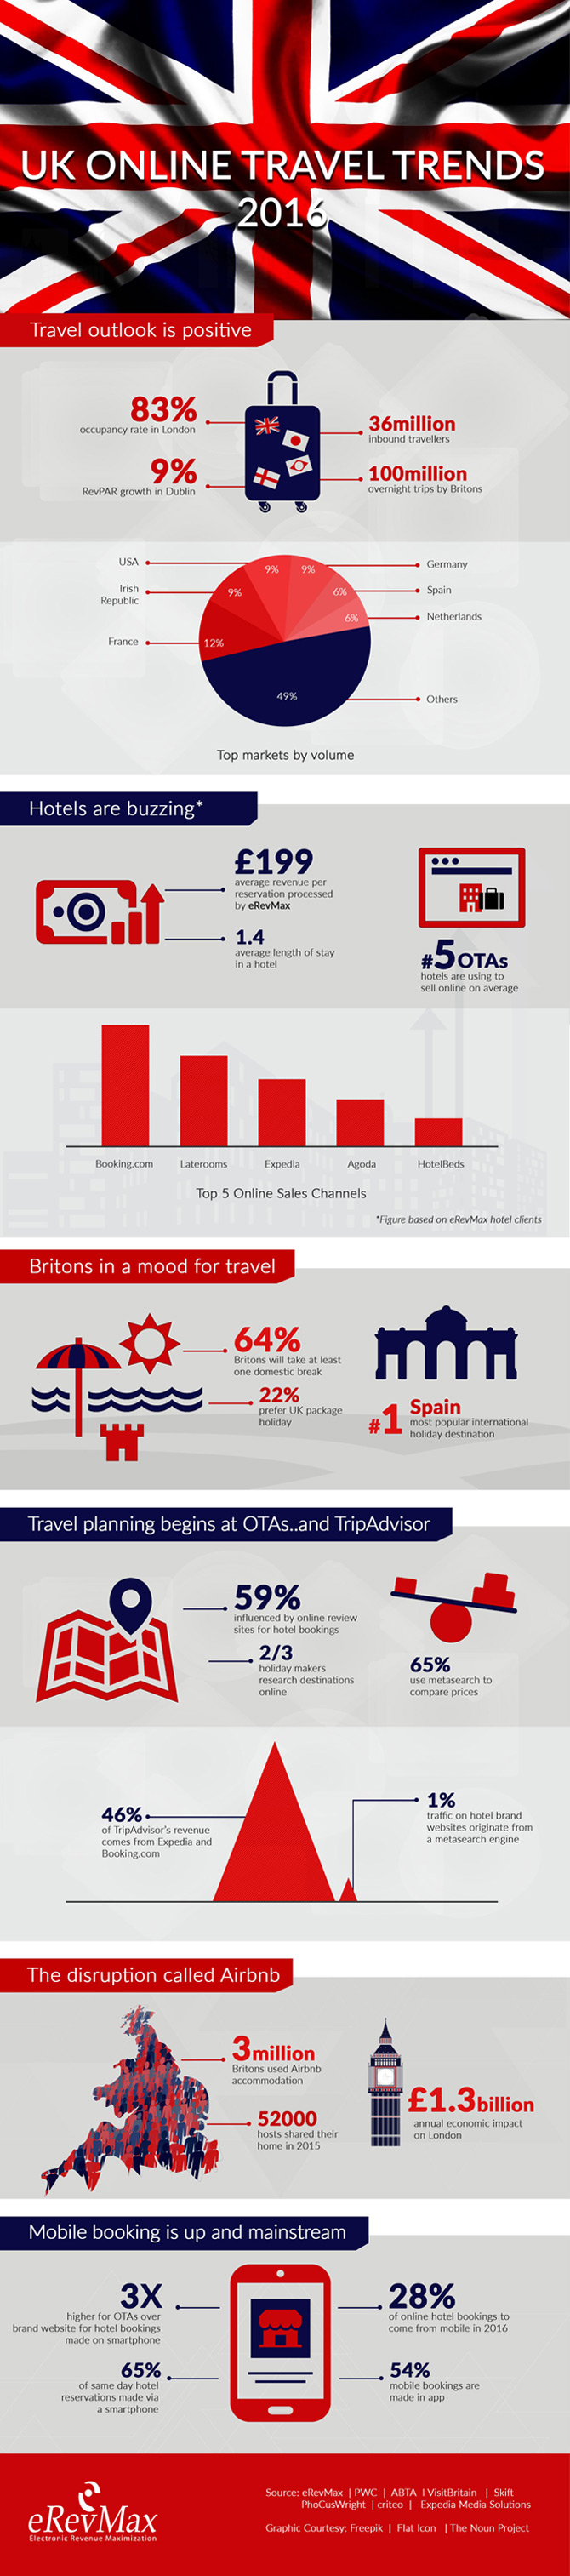 UK Online Travel Trends